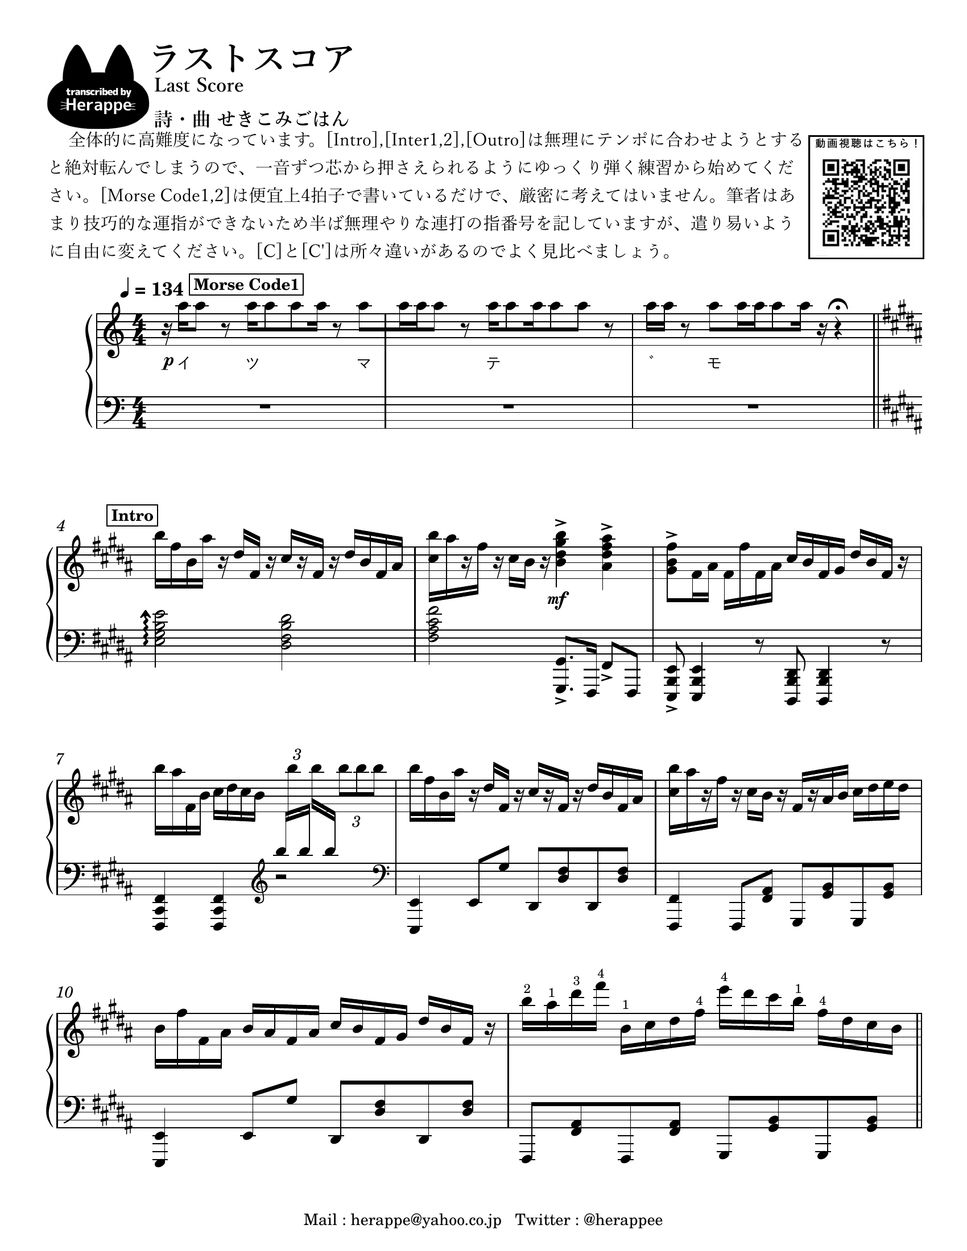 せきこみごはん feat.初音ミク - Last Score by herappe